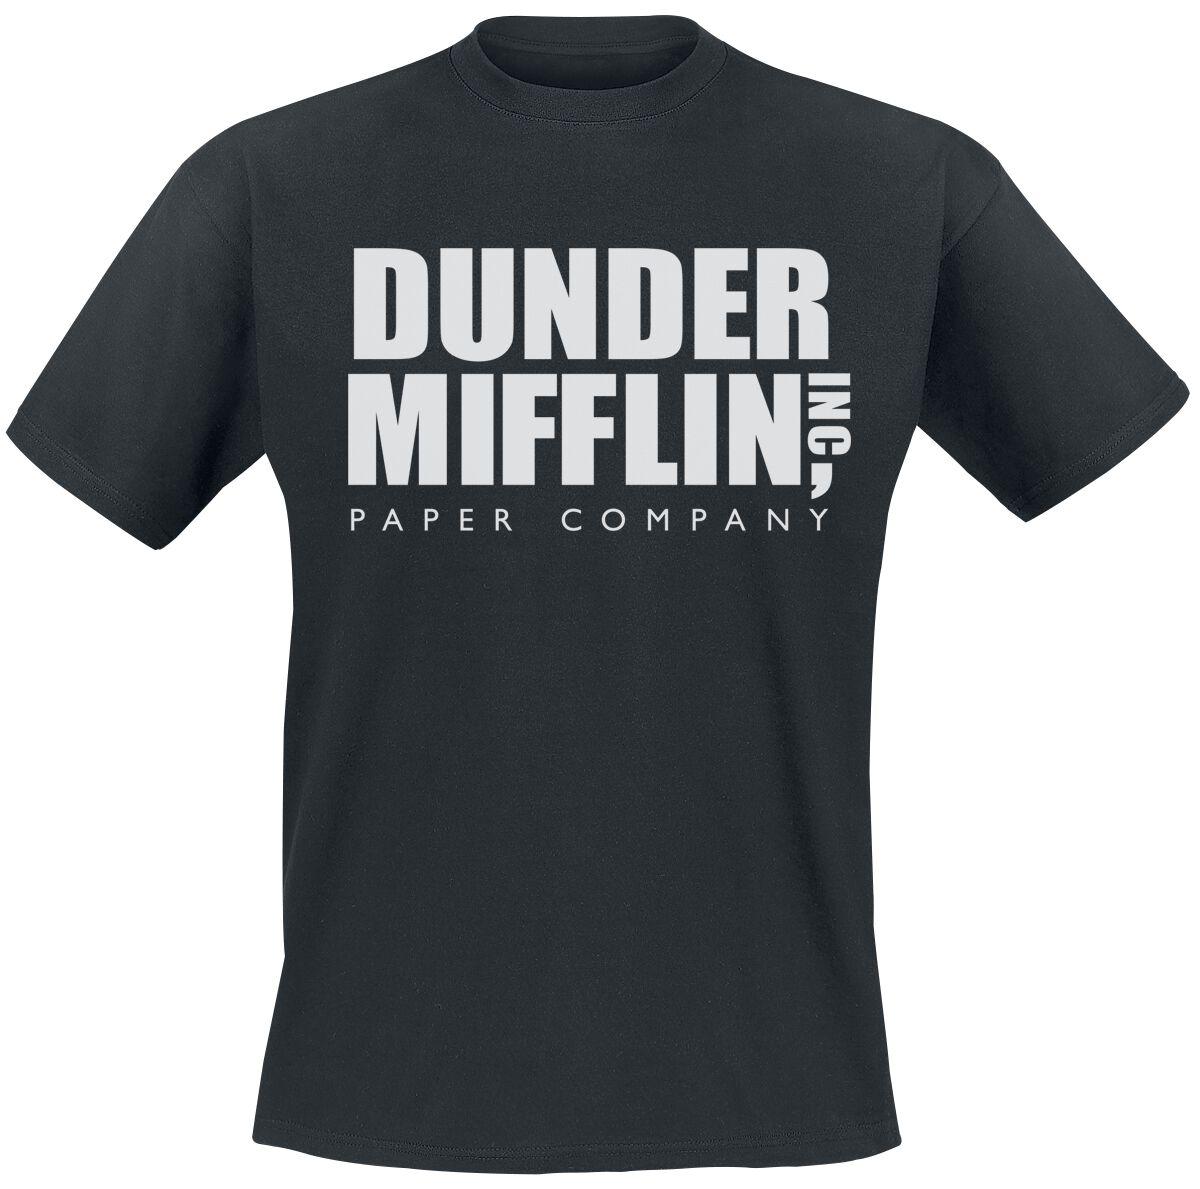 Camiseta Dunder Mifflin - Comprar em Caneato Store